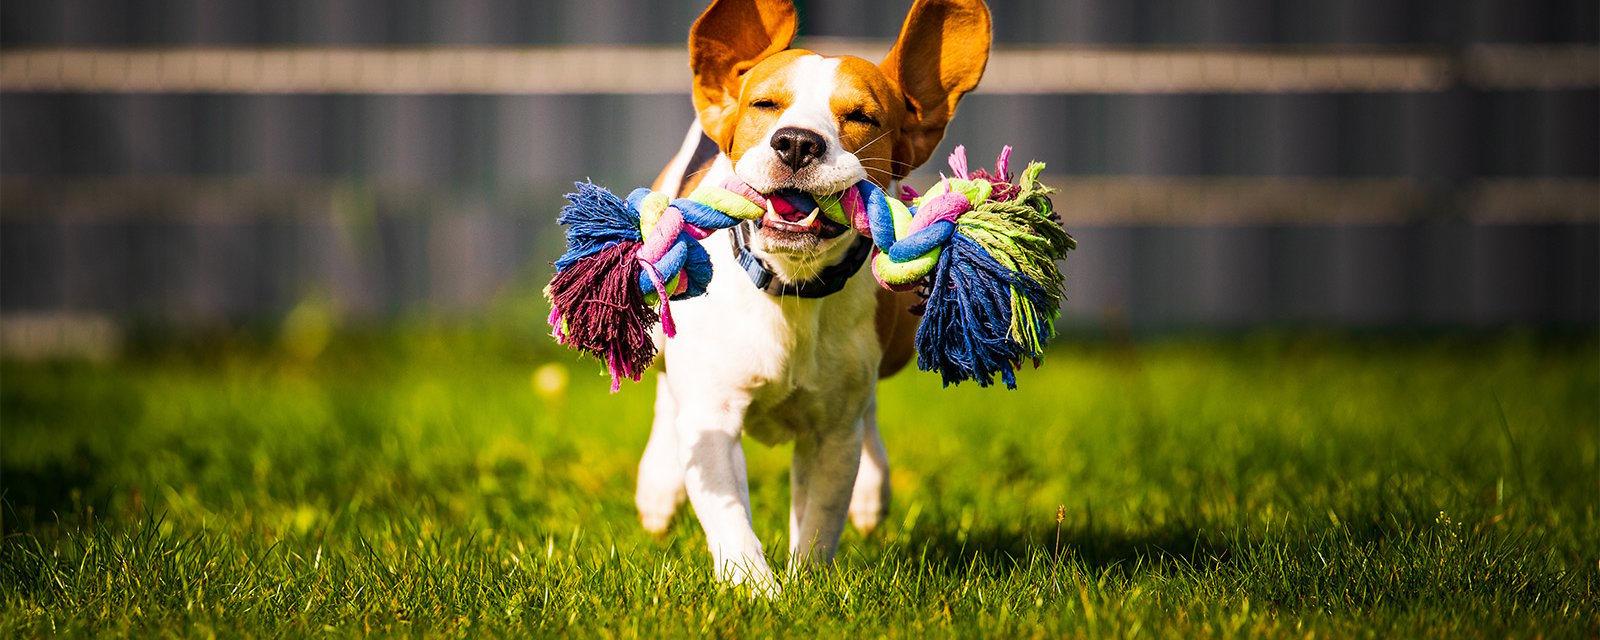 Les 5 meilleurs jouets pour chien pour les activités de plein air